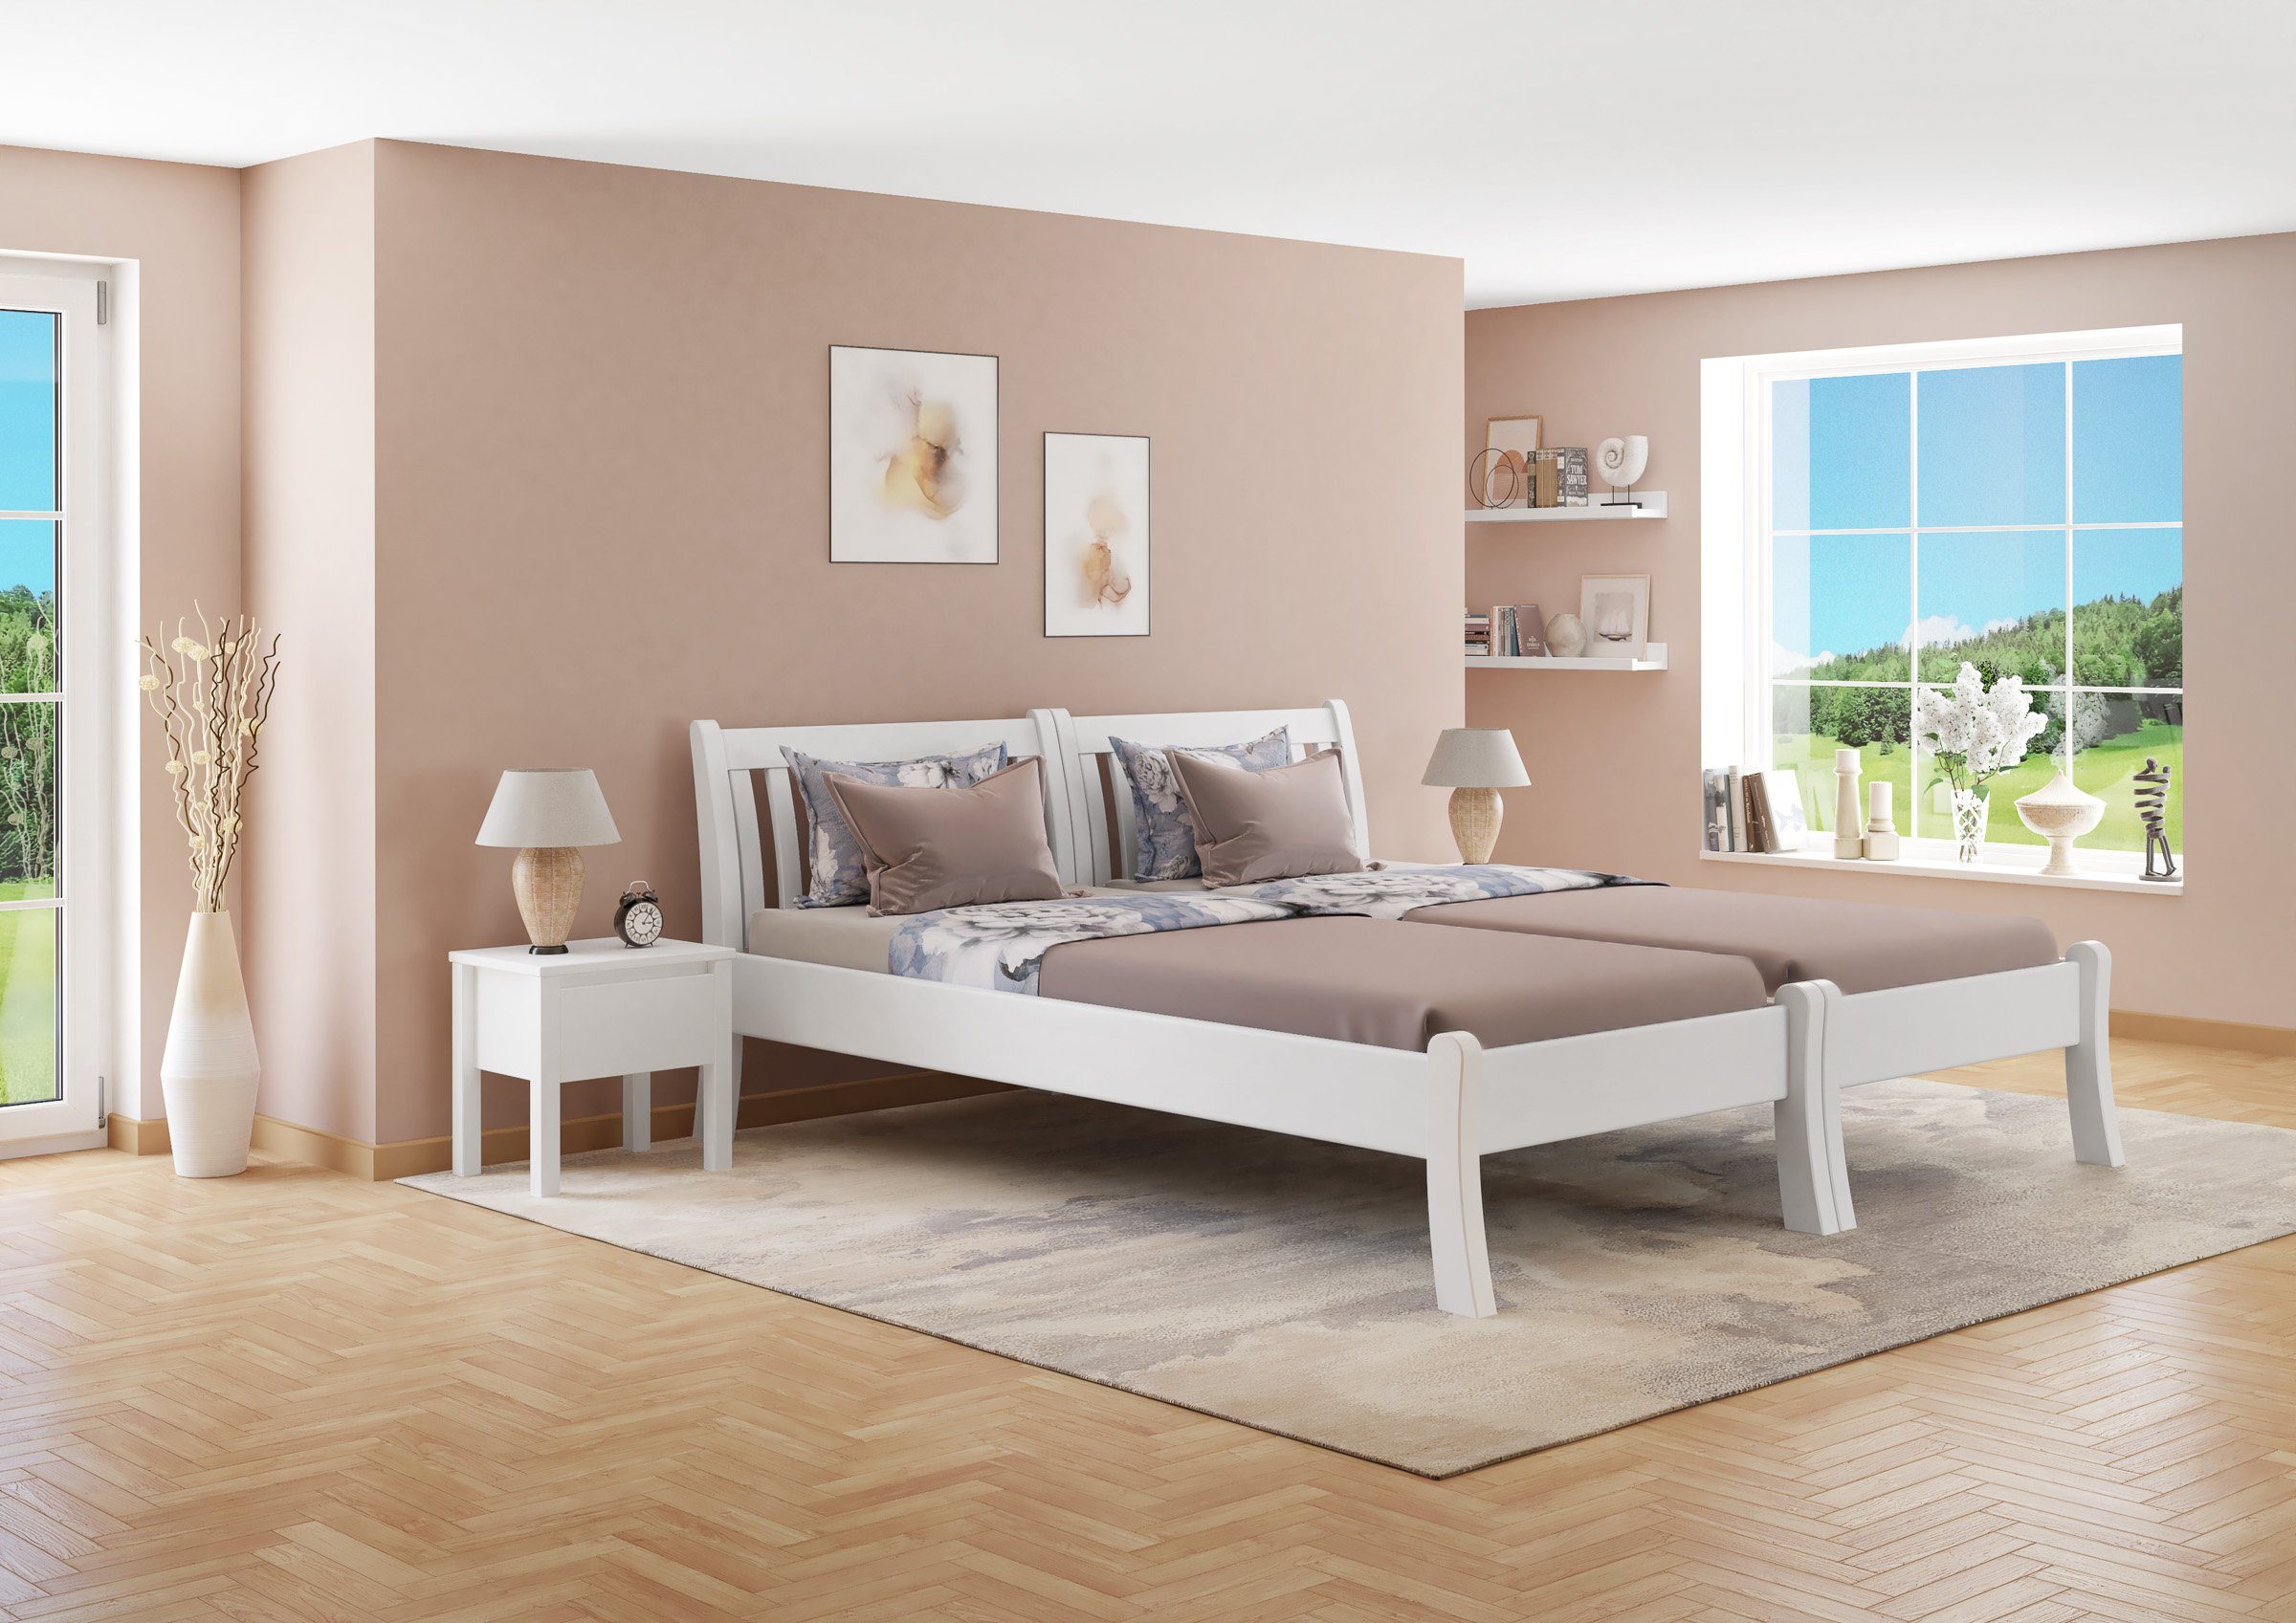 ERST-HOLZ Bett Weißes Kieferwaschweiß Einzelbett romantisches 90x200, hohe Sitzkante Kiefer massiv